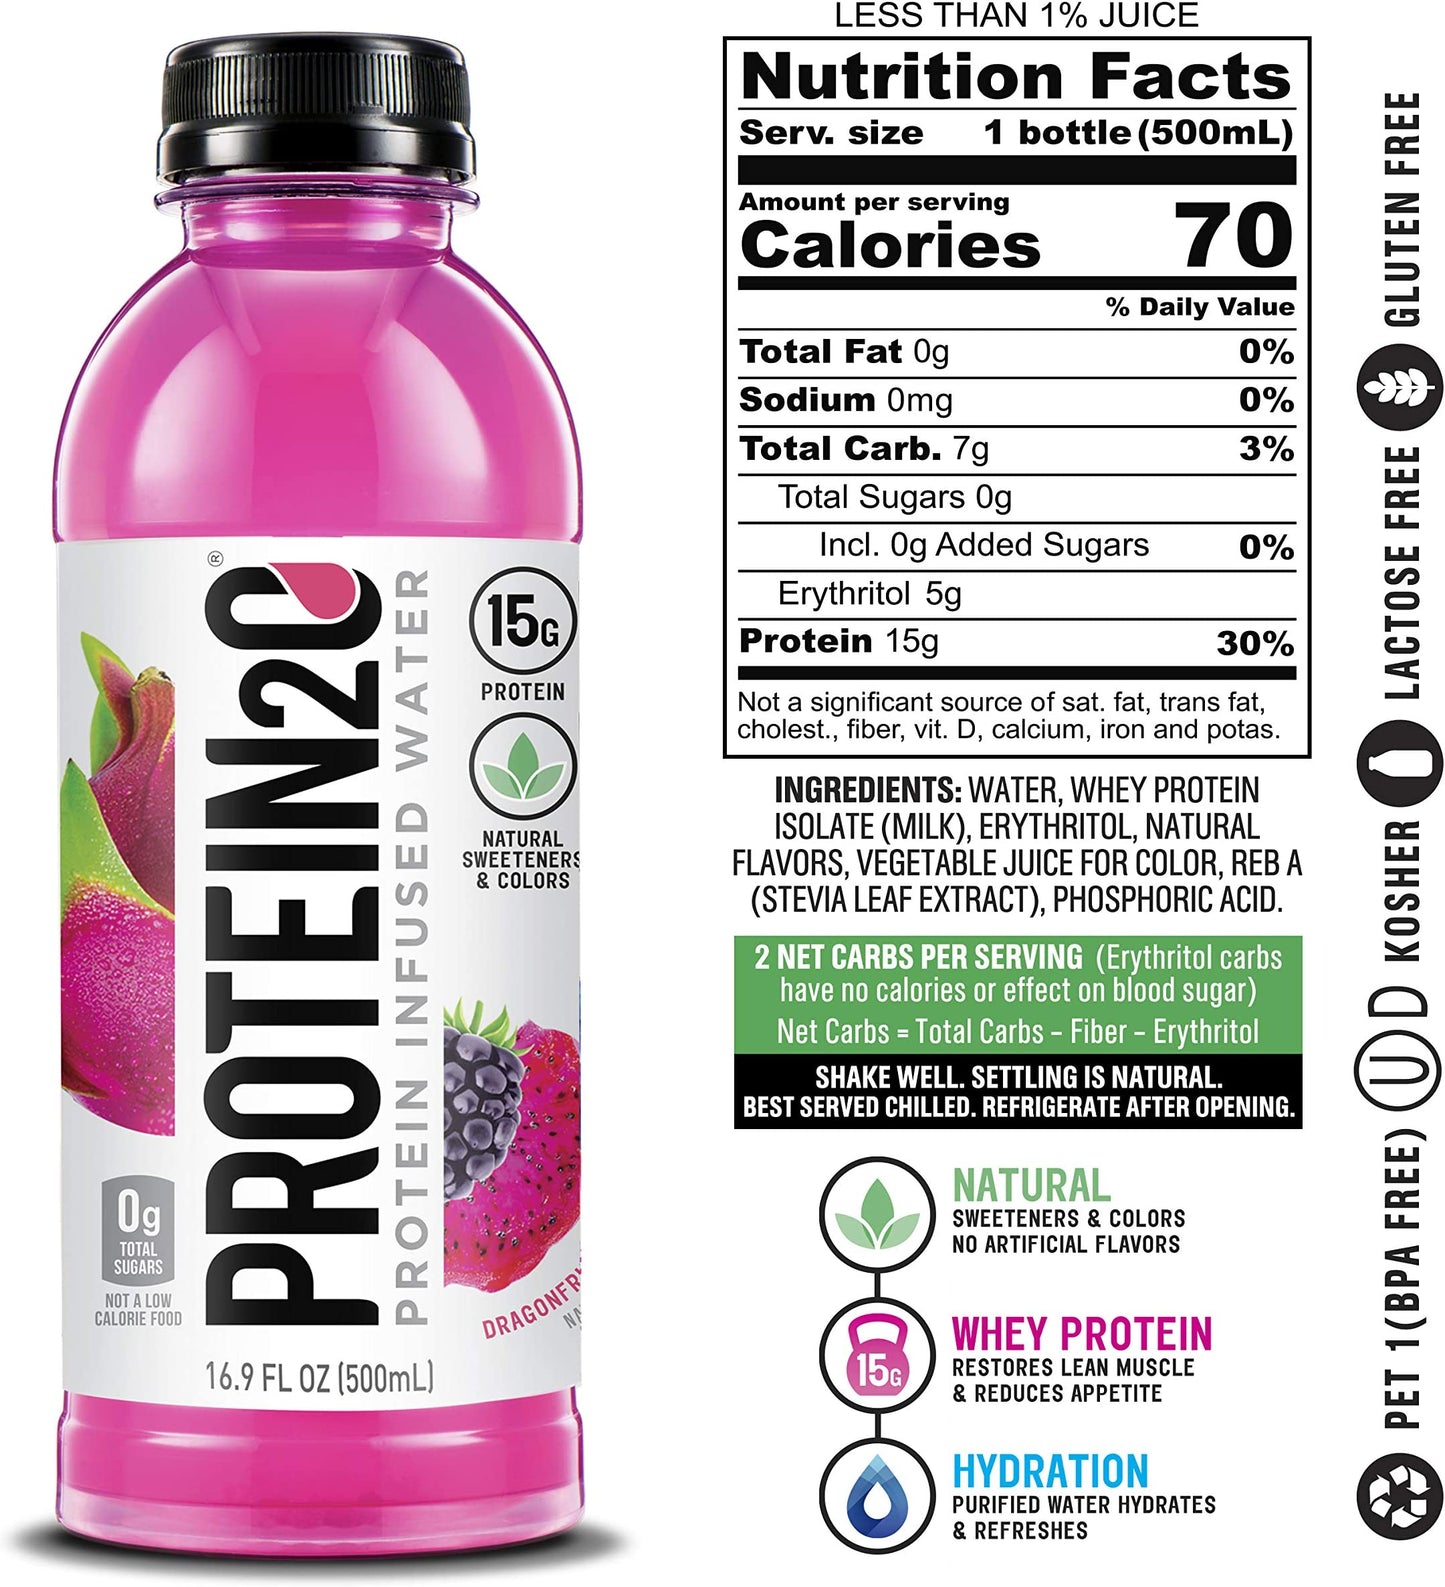 【$9.9自取限定】Protein2o Protein Infused Water 蛋白電解質飲品